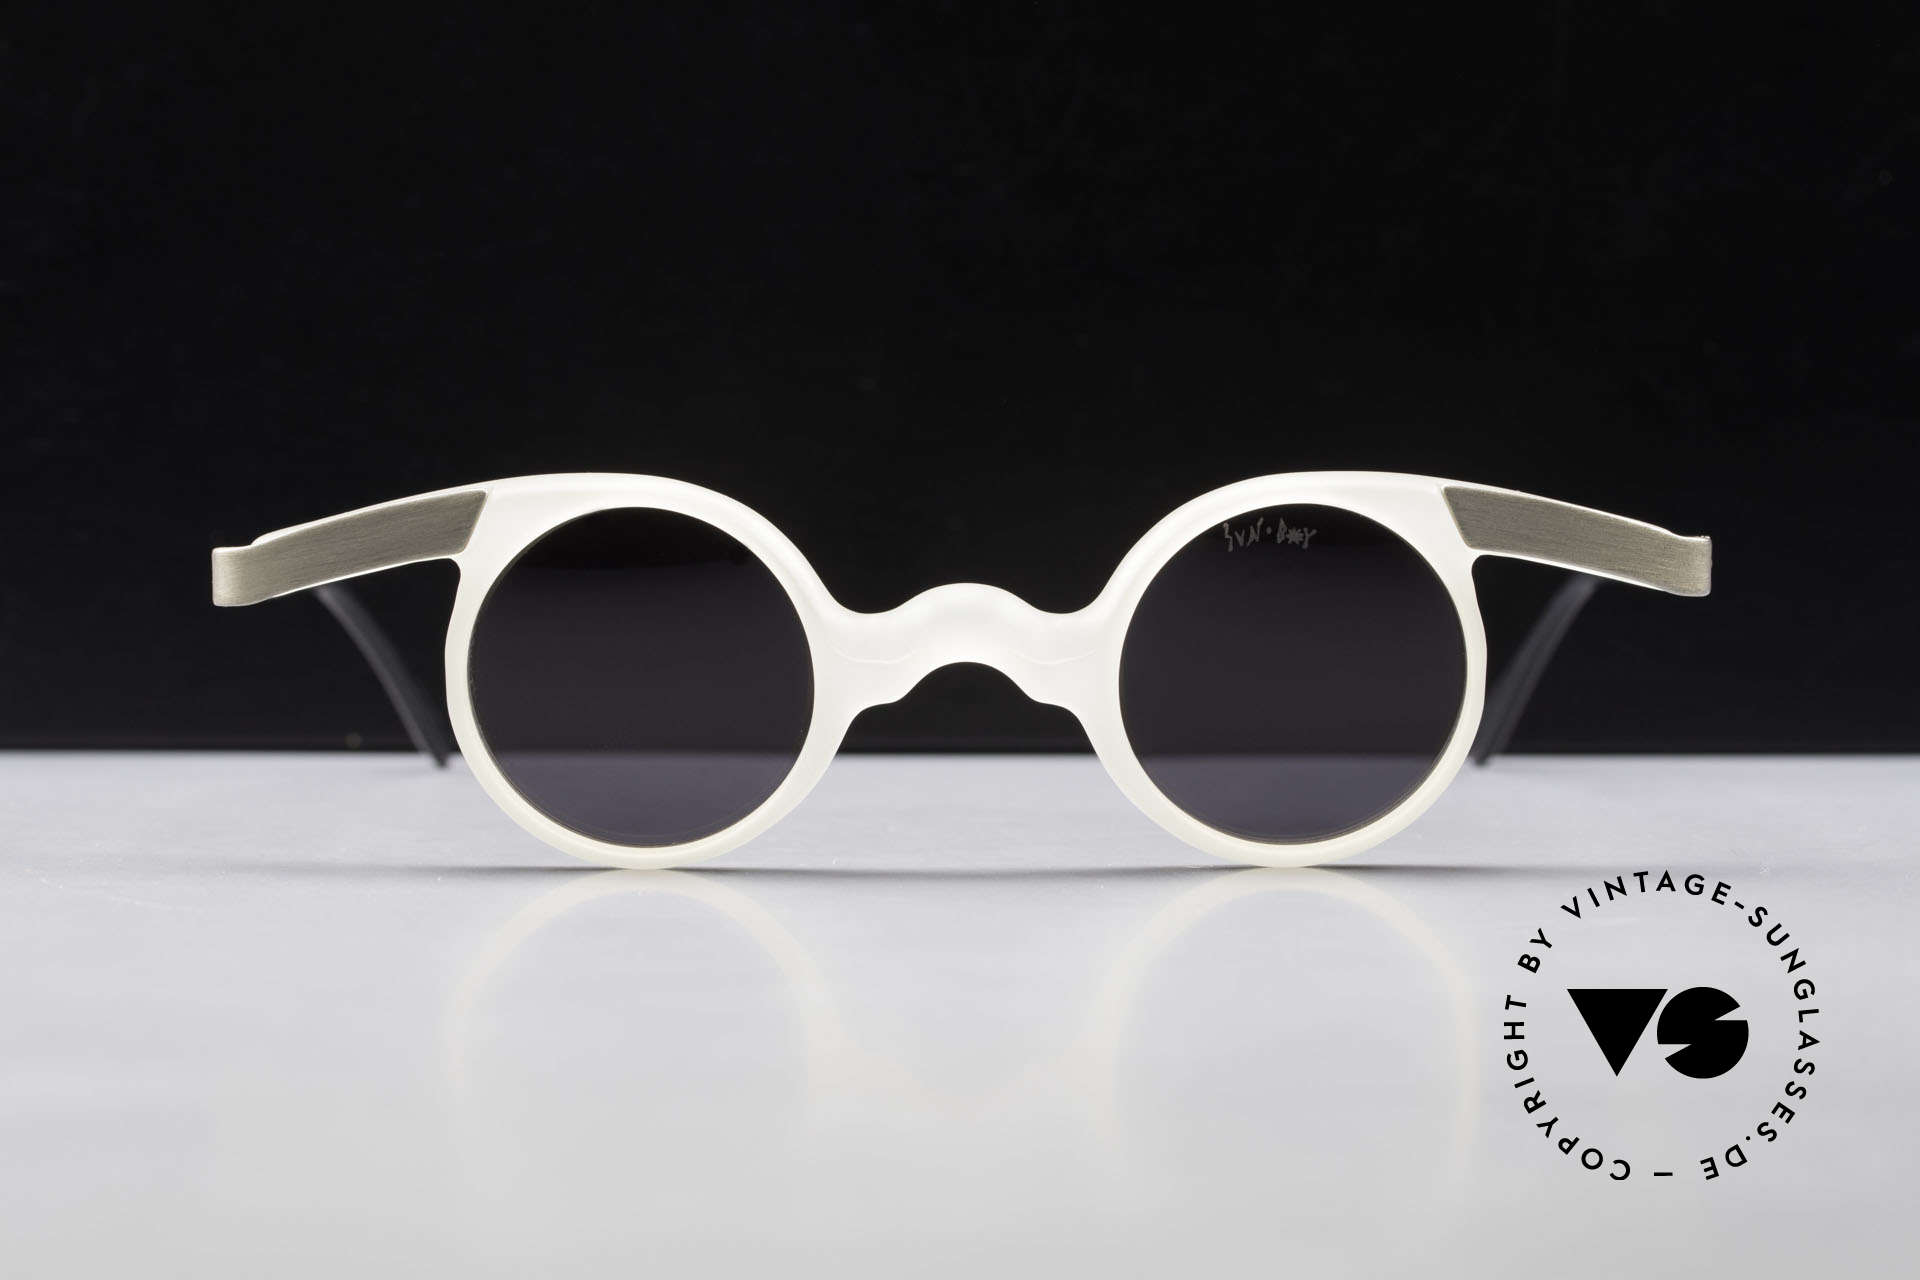 Sunboy SB39 Vintage No Retro Sonnenbrille, spektakuläre Rahmenkonstruktion - ein Hingucker!, Passend für Herren und Damen